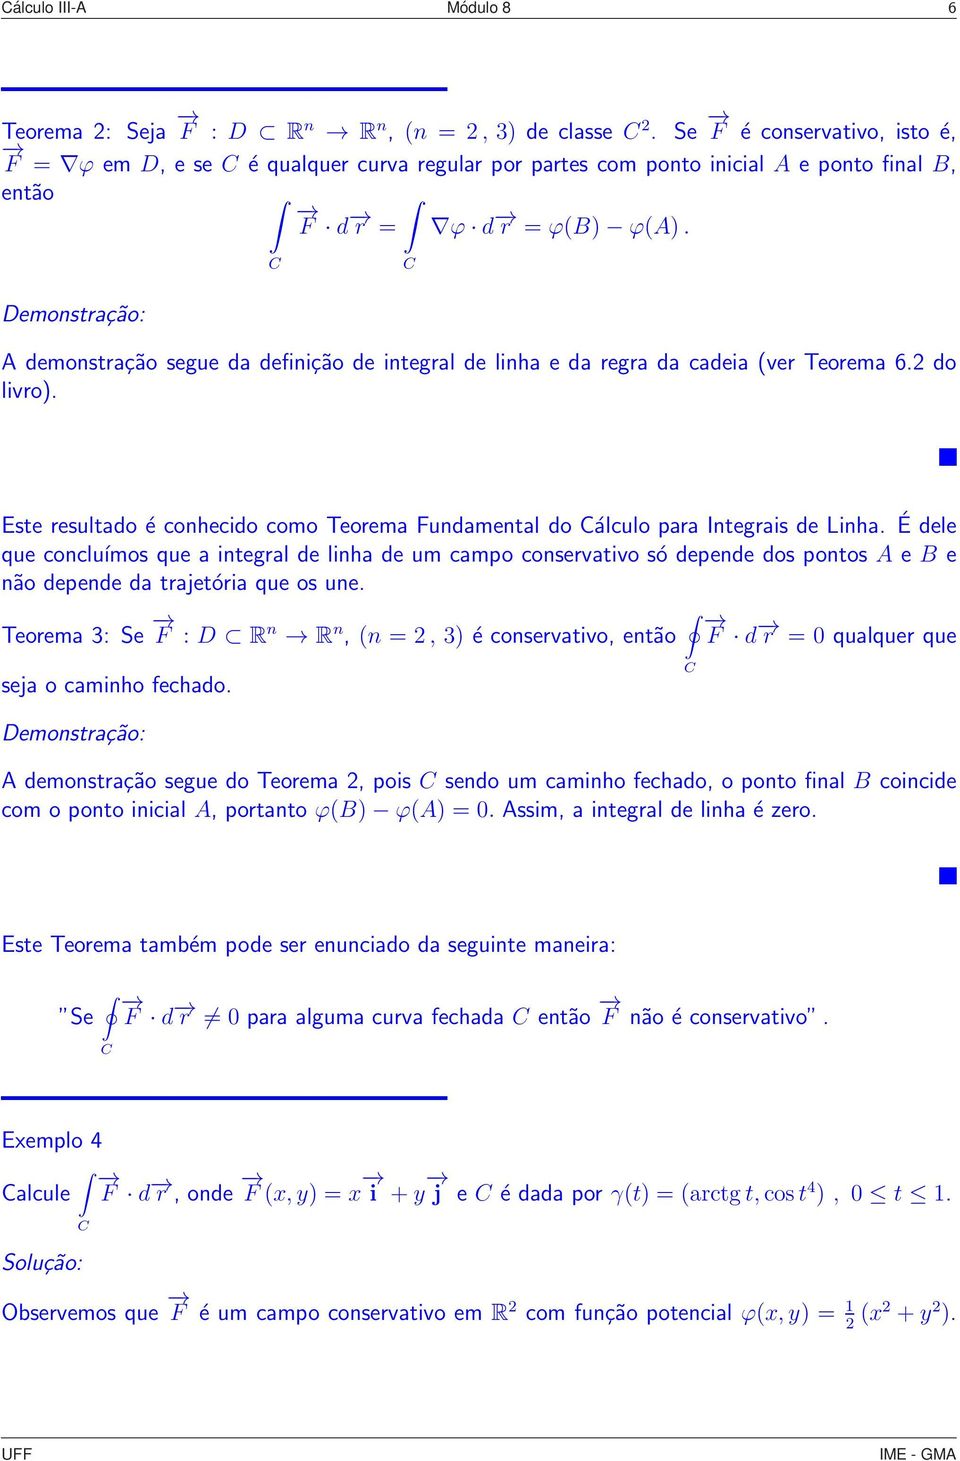 Demonstrção: A demonstrção segue d definição de integrl de linh e d regr d cdei (ver Teorem 6.2 do livro). Este resultdo é conhecido como Teorem Fundmentl do álculo pr Integris de Linh.